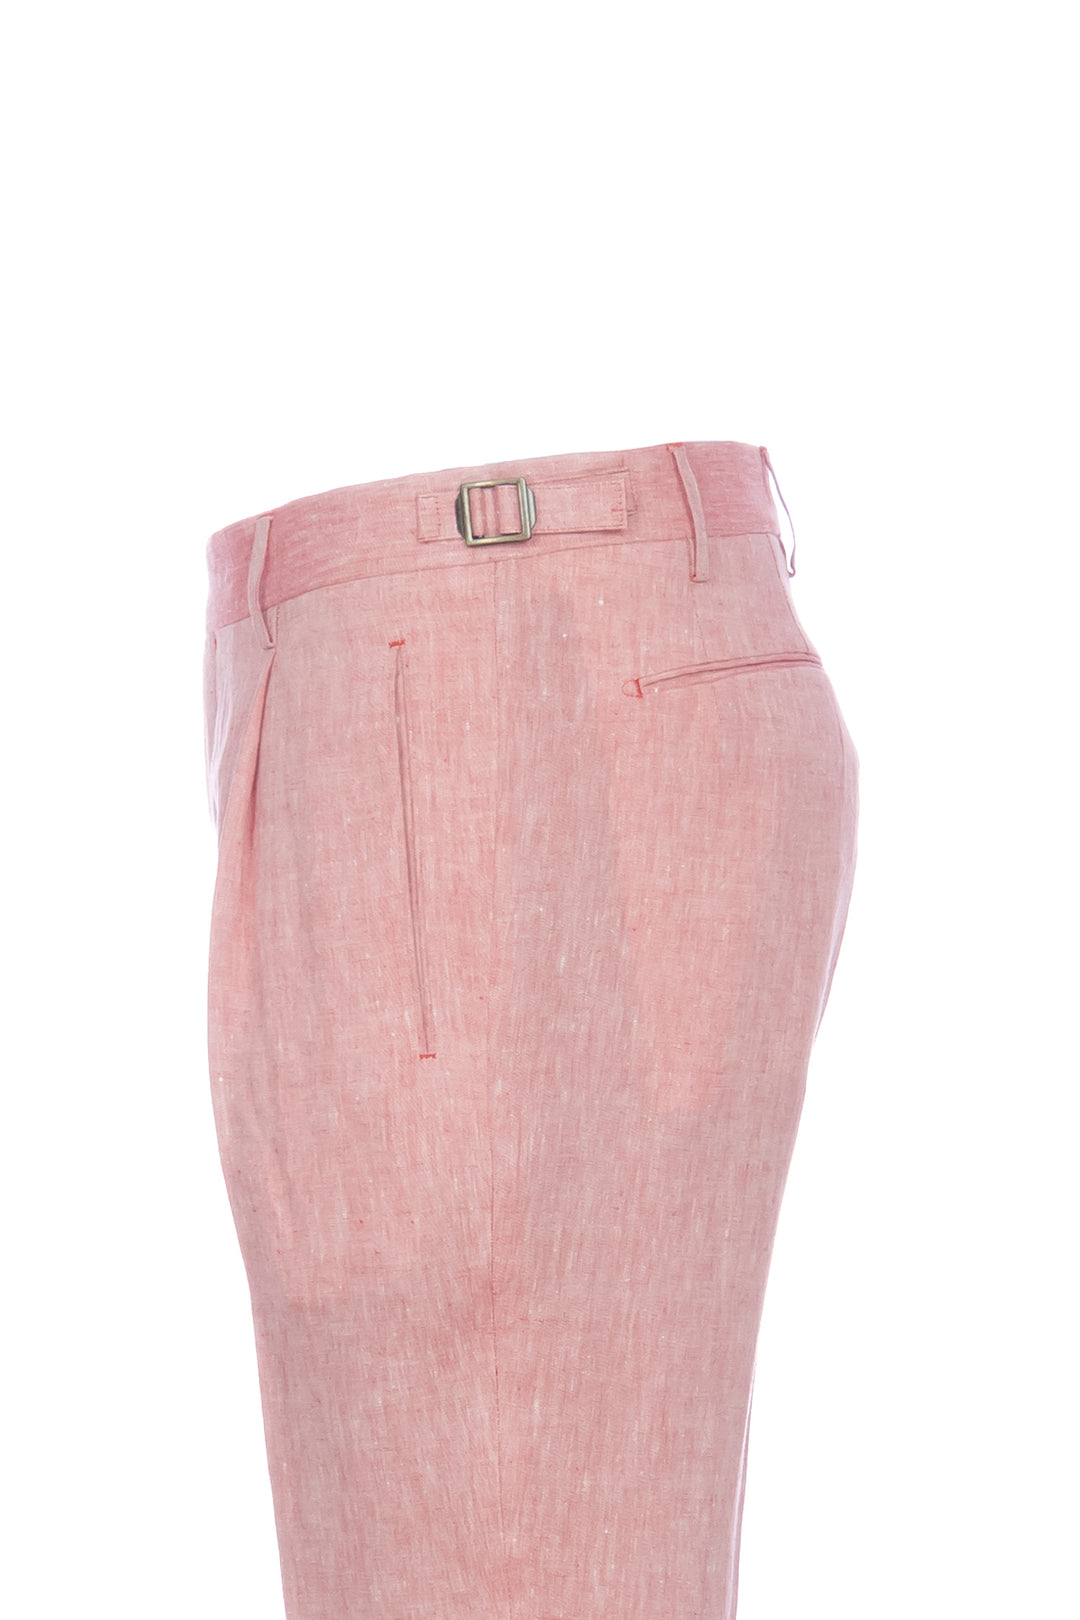 BERWICH Pantalone “RETRO” rosa pesca in seta con una pince - Mancinelli 1954